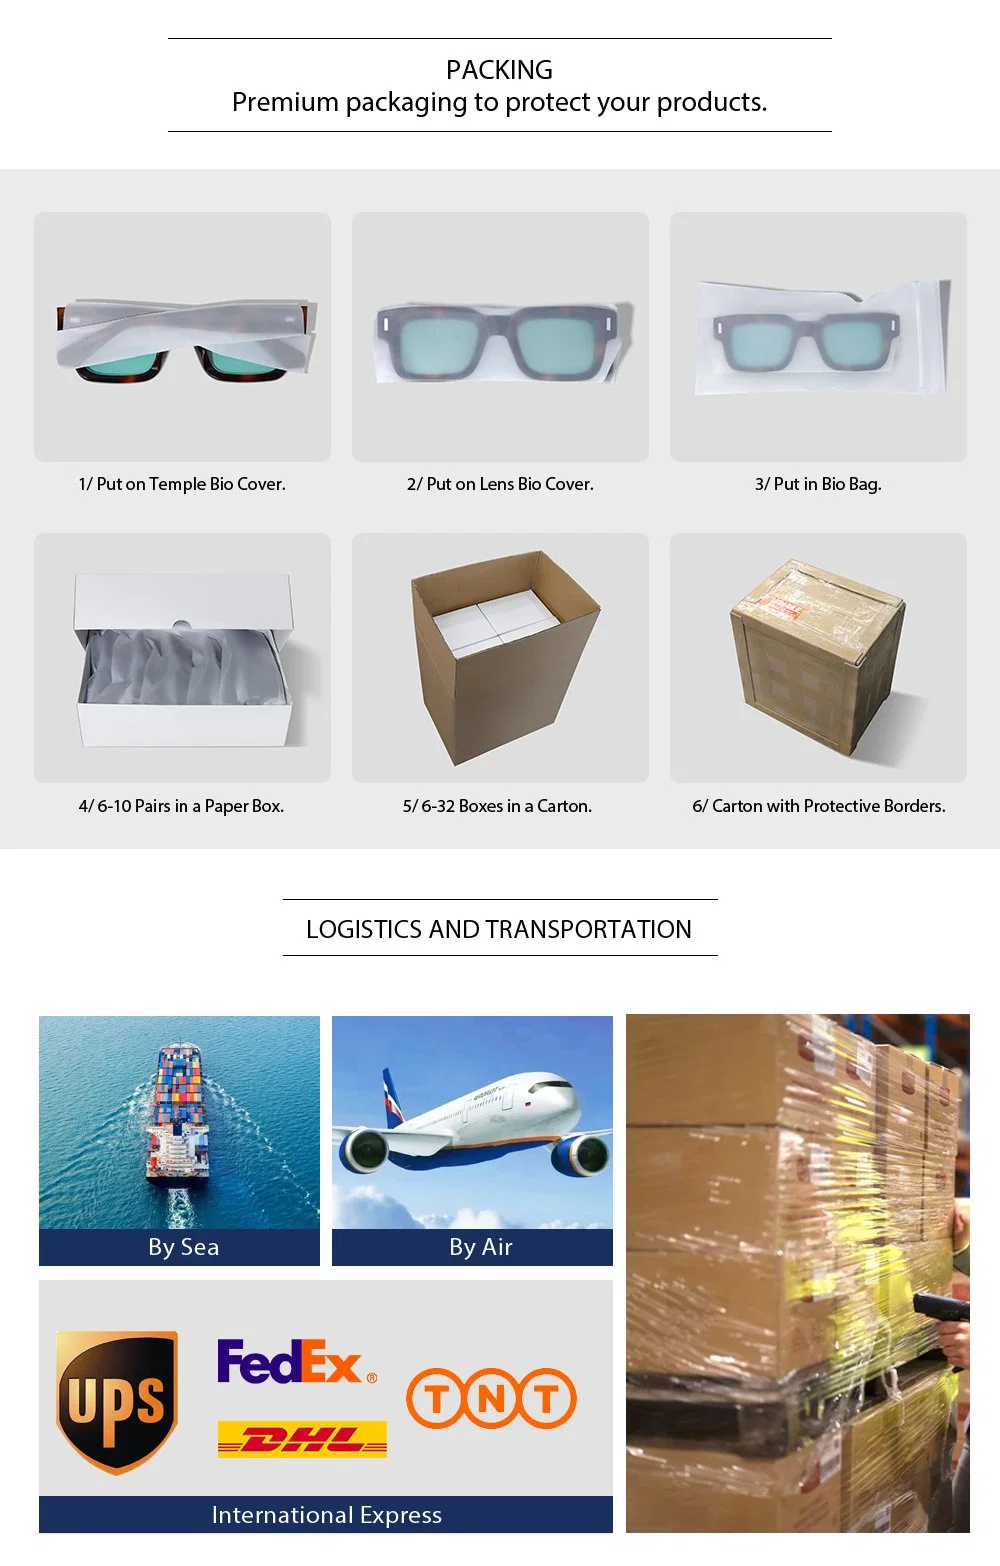 Yeetian Bevel Design Square Clear Transparent Luxury Acetate Sunglasses Men